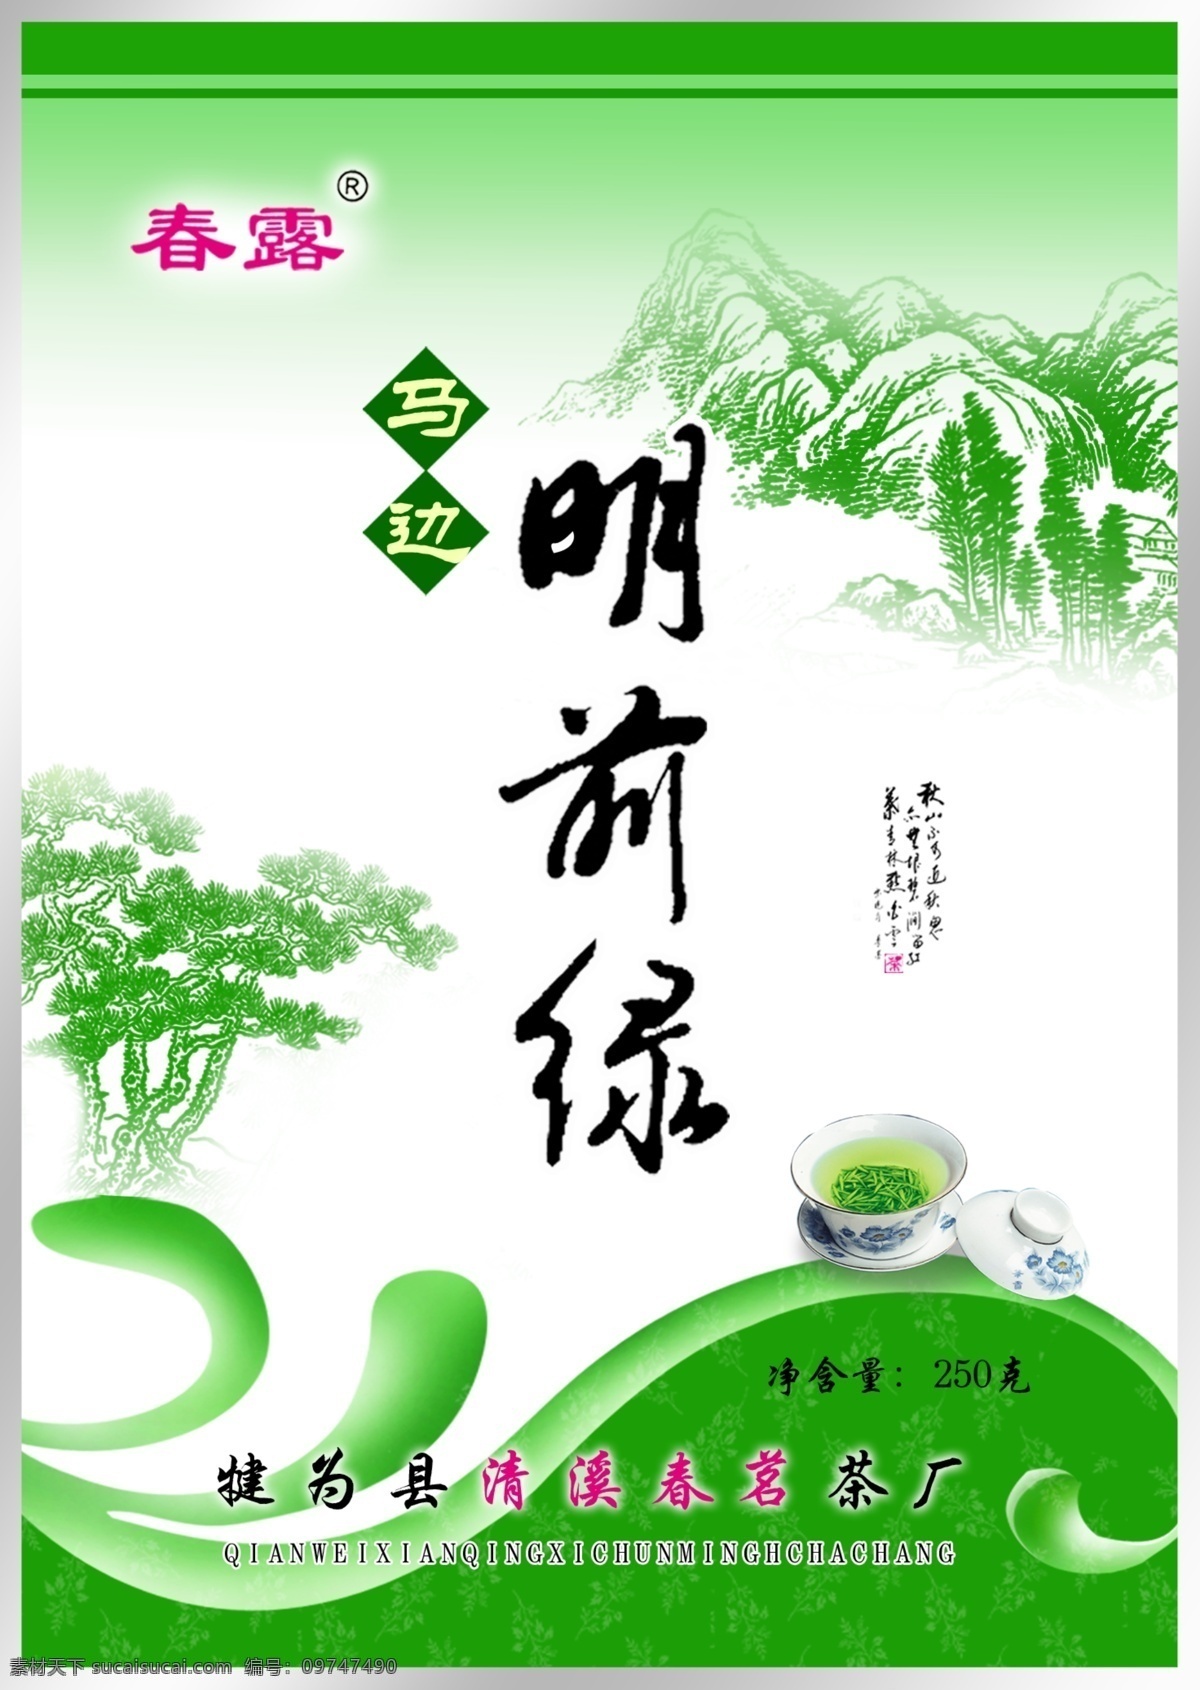 包装袋 包装 包装设计 茶 茶树 高档 高贵 漂亮 清晰 山峦 中国风 明前绿茶 psd源文件